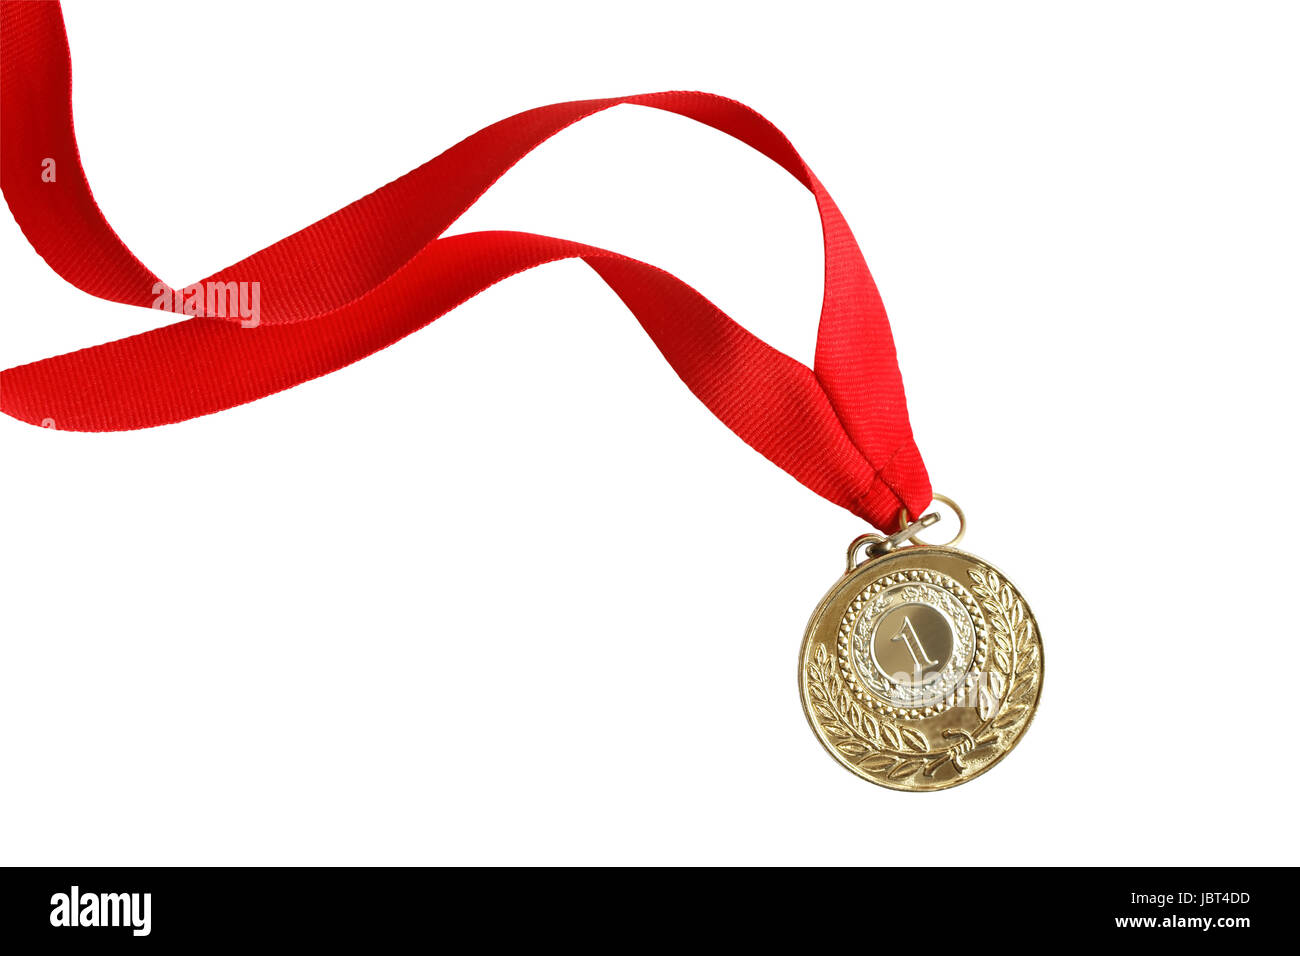 Médaille de ruban Banque de photographies et d'images à haute